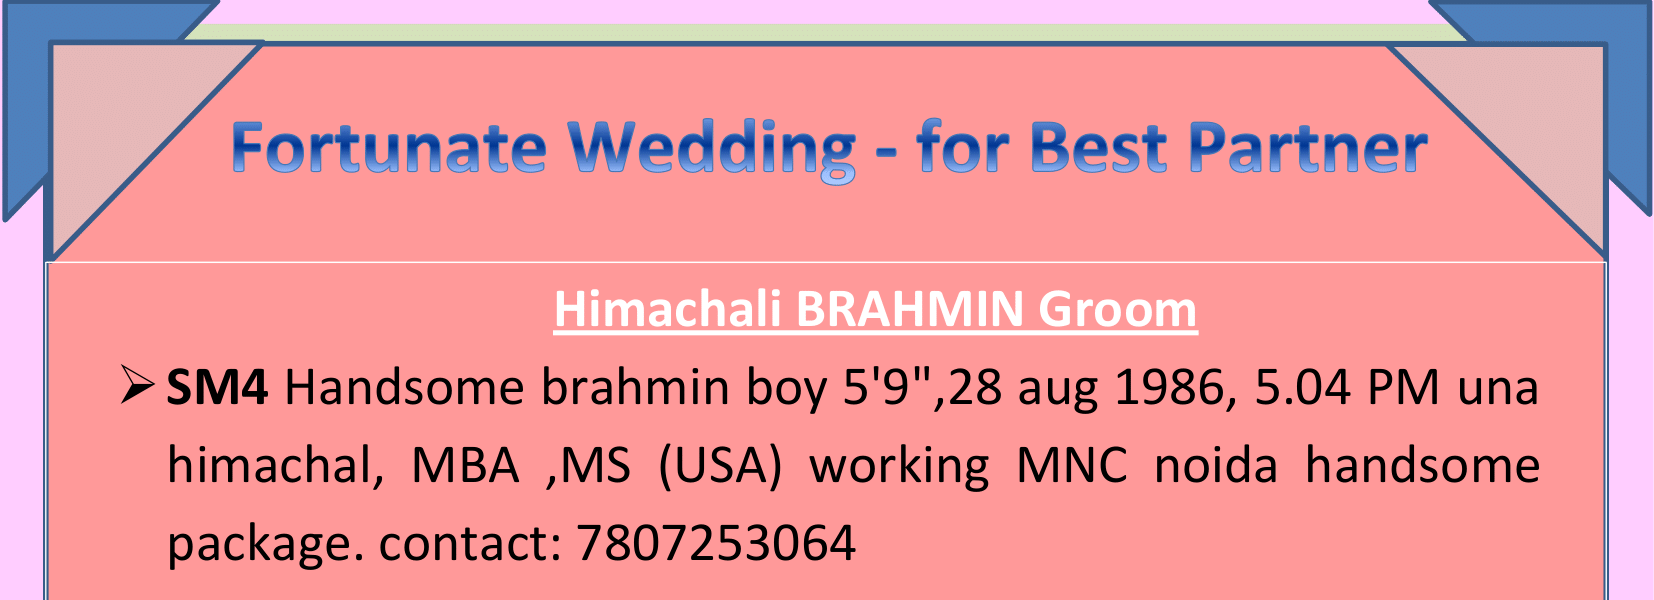 himachali brahmin groom